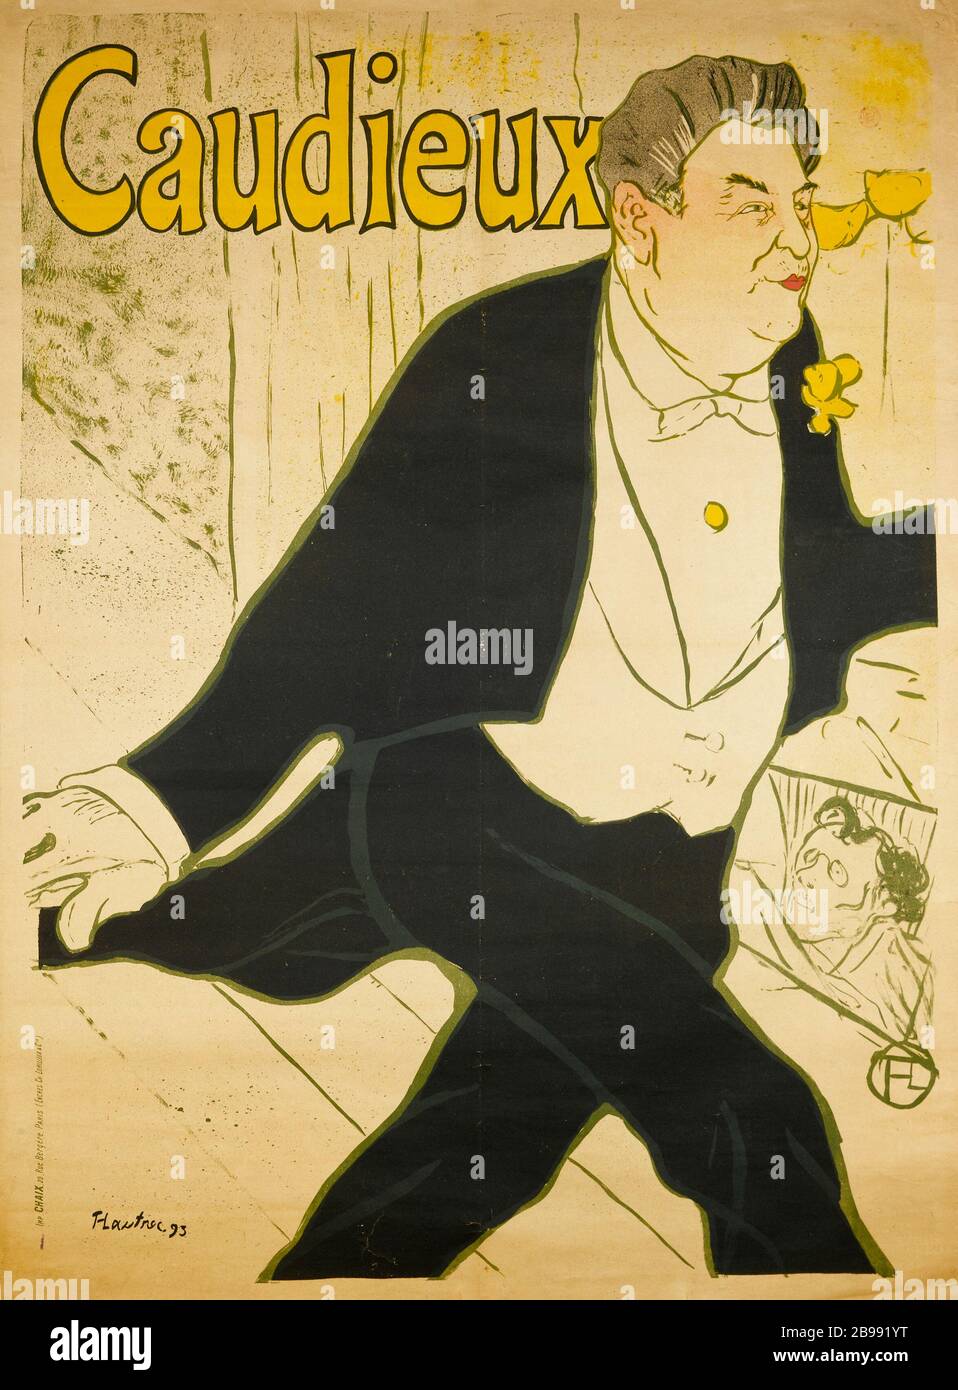 Toulouse-Lautrec - Caudieux Henri Marie Raymond de Toulouse-Lautrec (1864-1901). Imprimerie Chaix. Caudieux. Affiche. Lithographie couleur, 1893. Paris, musée Carnavalet. Stockfoto